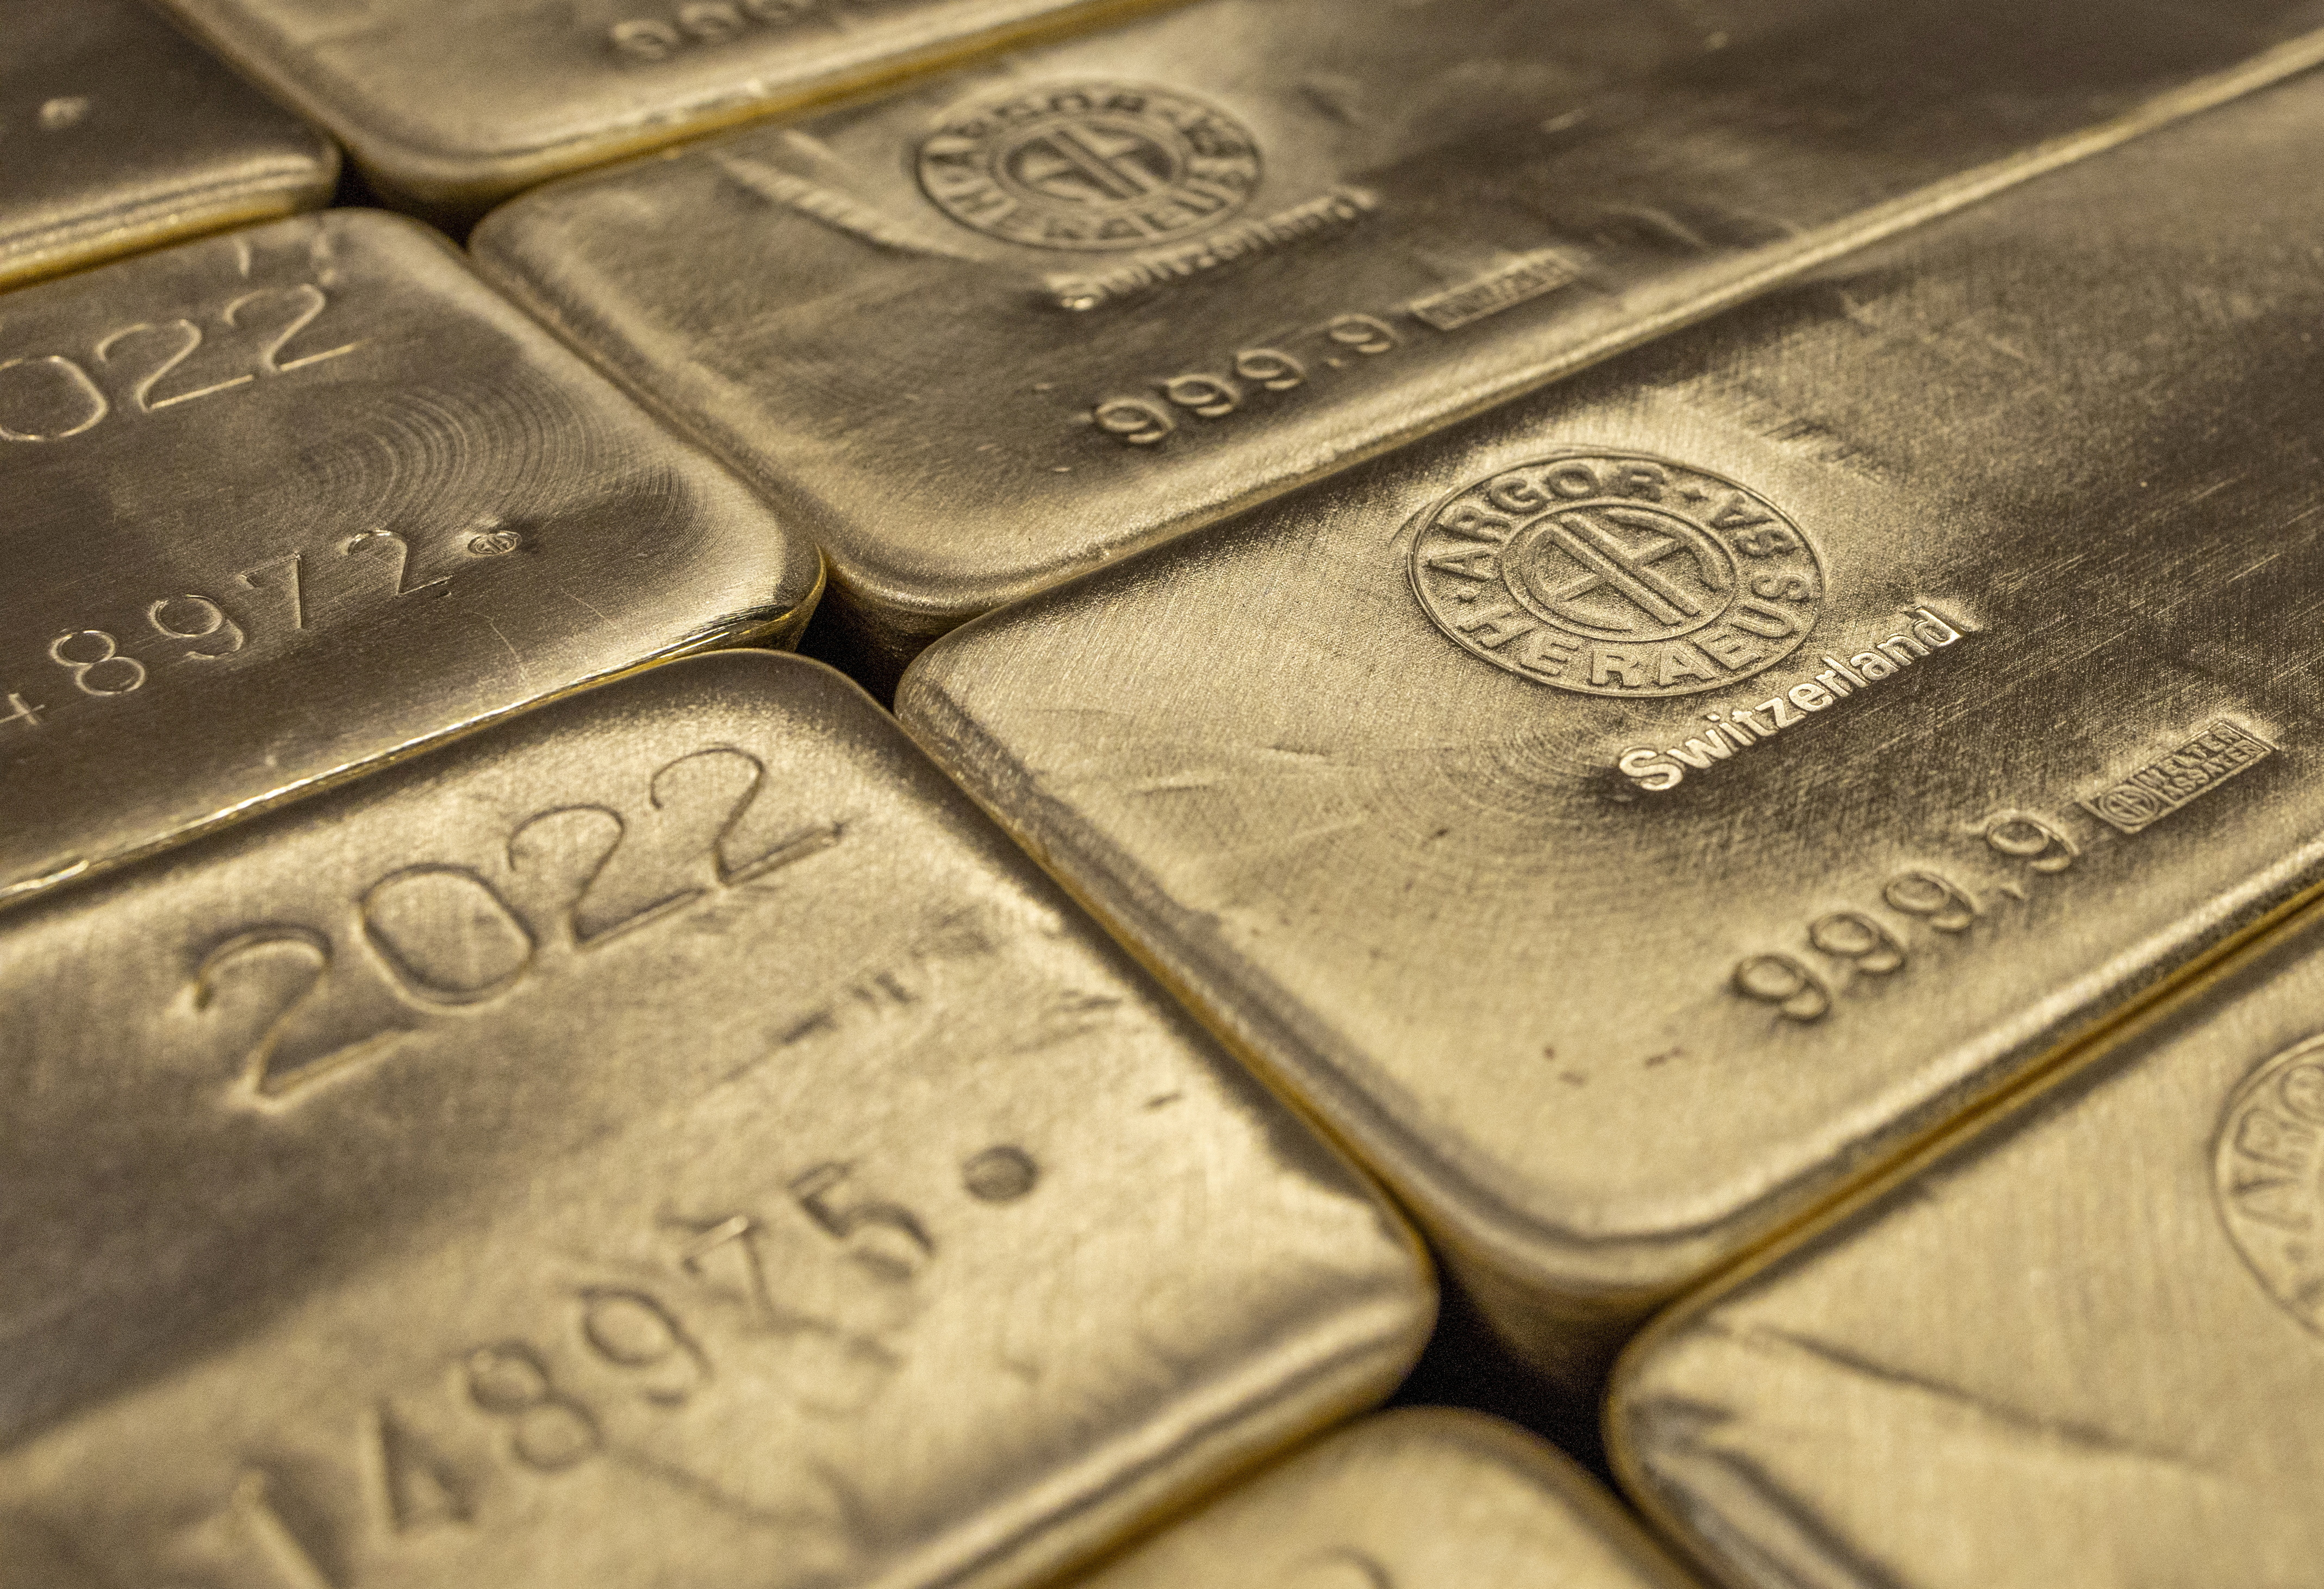 ทองคำซื้อขายในกรอบแคบ ตลาดรอสัญญาณใหม่